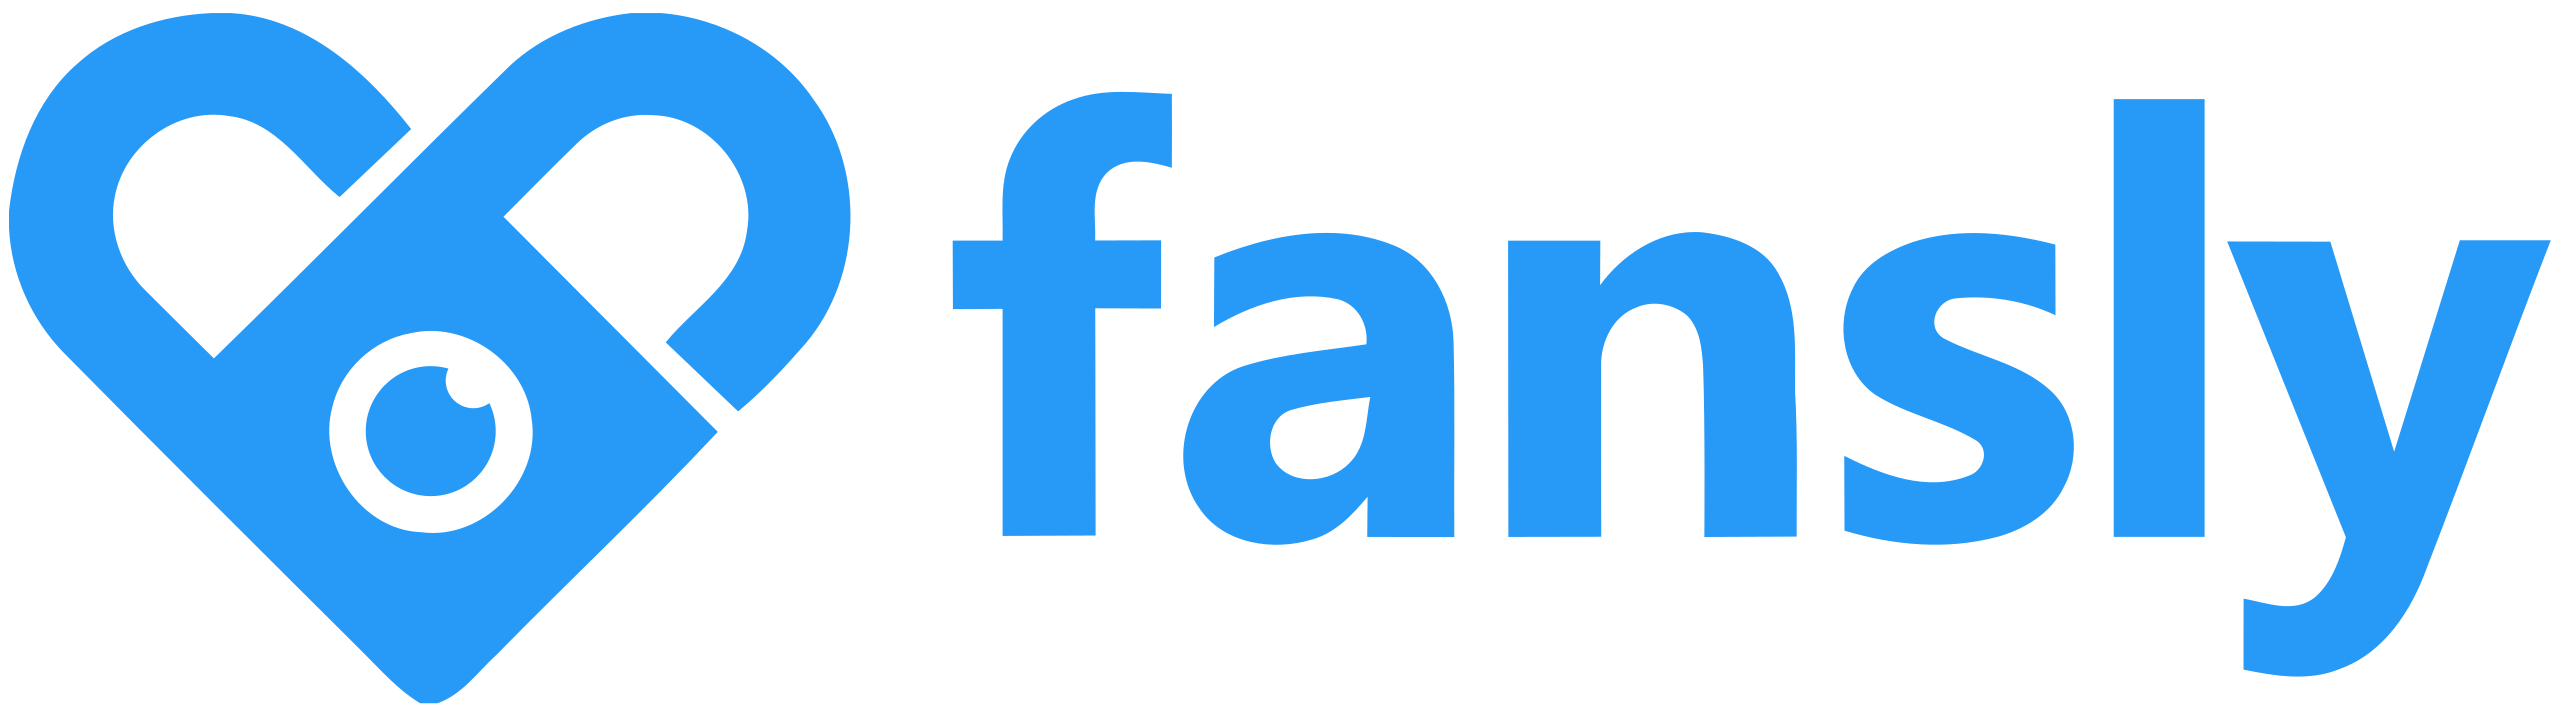 fansly logo